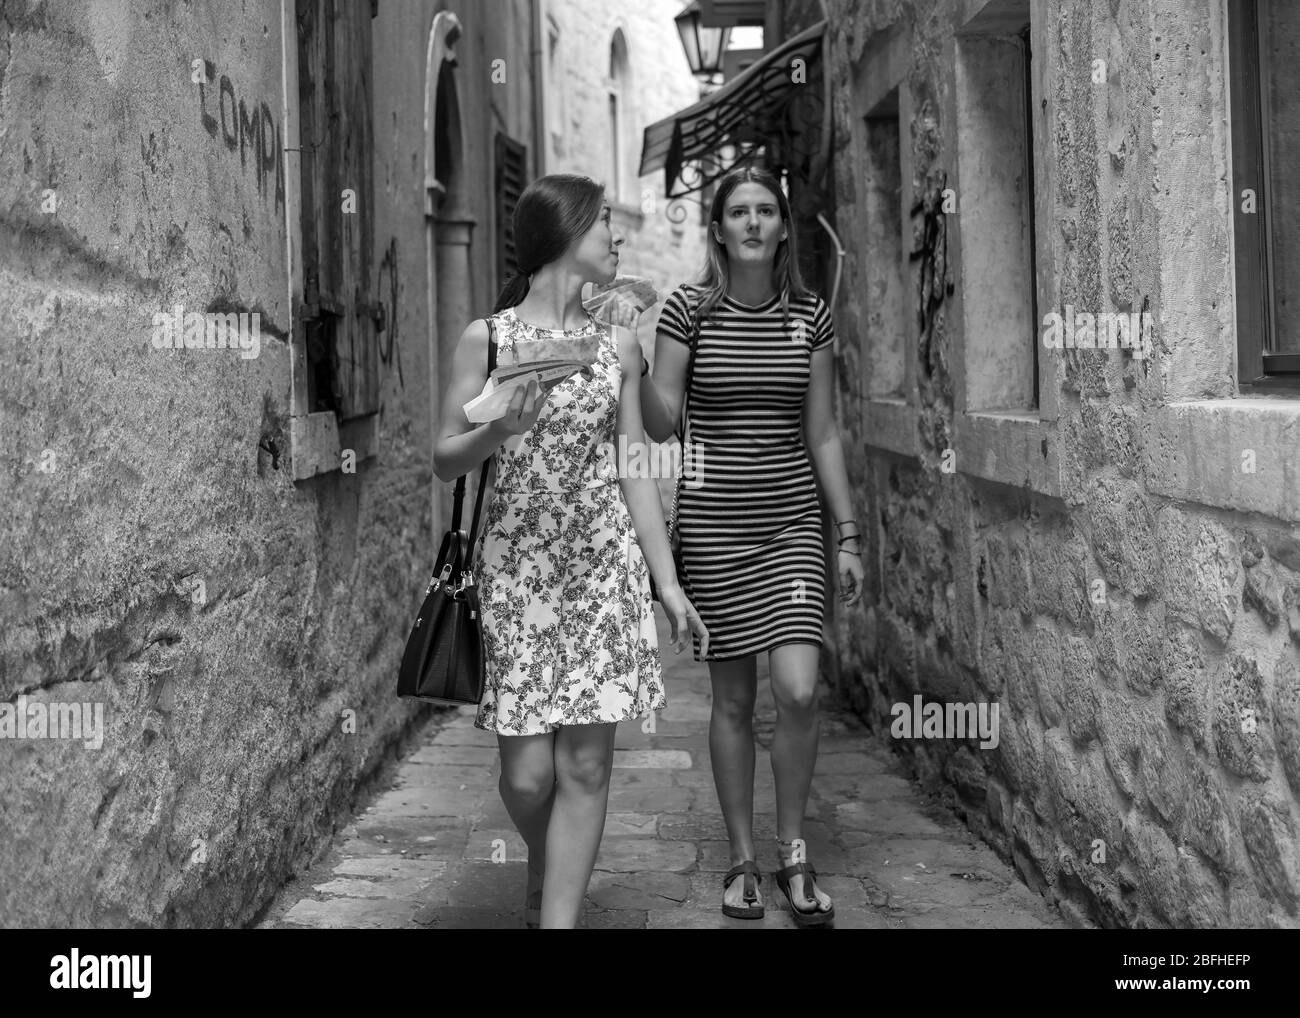 Monténégro, 17 septembre 2019 : deux jeunes femmes marchant et s'empaquent dans la rue pavée étroite de la vieille ville de Kotor Banque D'Images